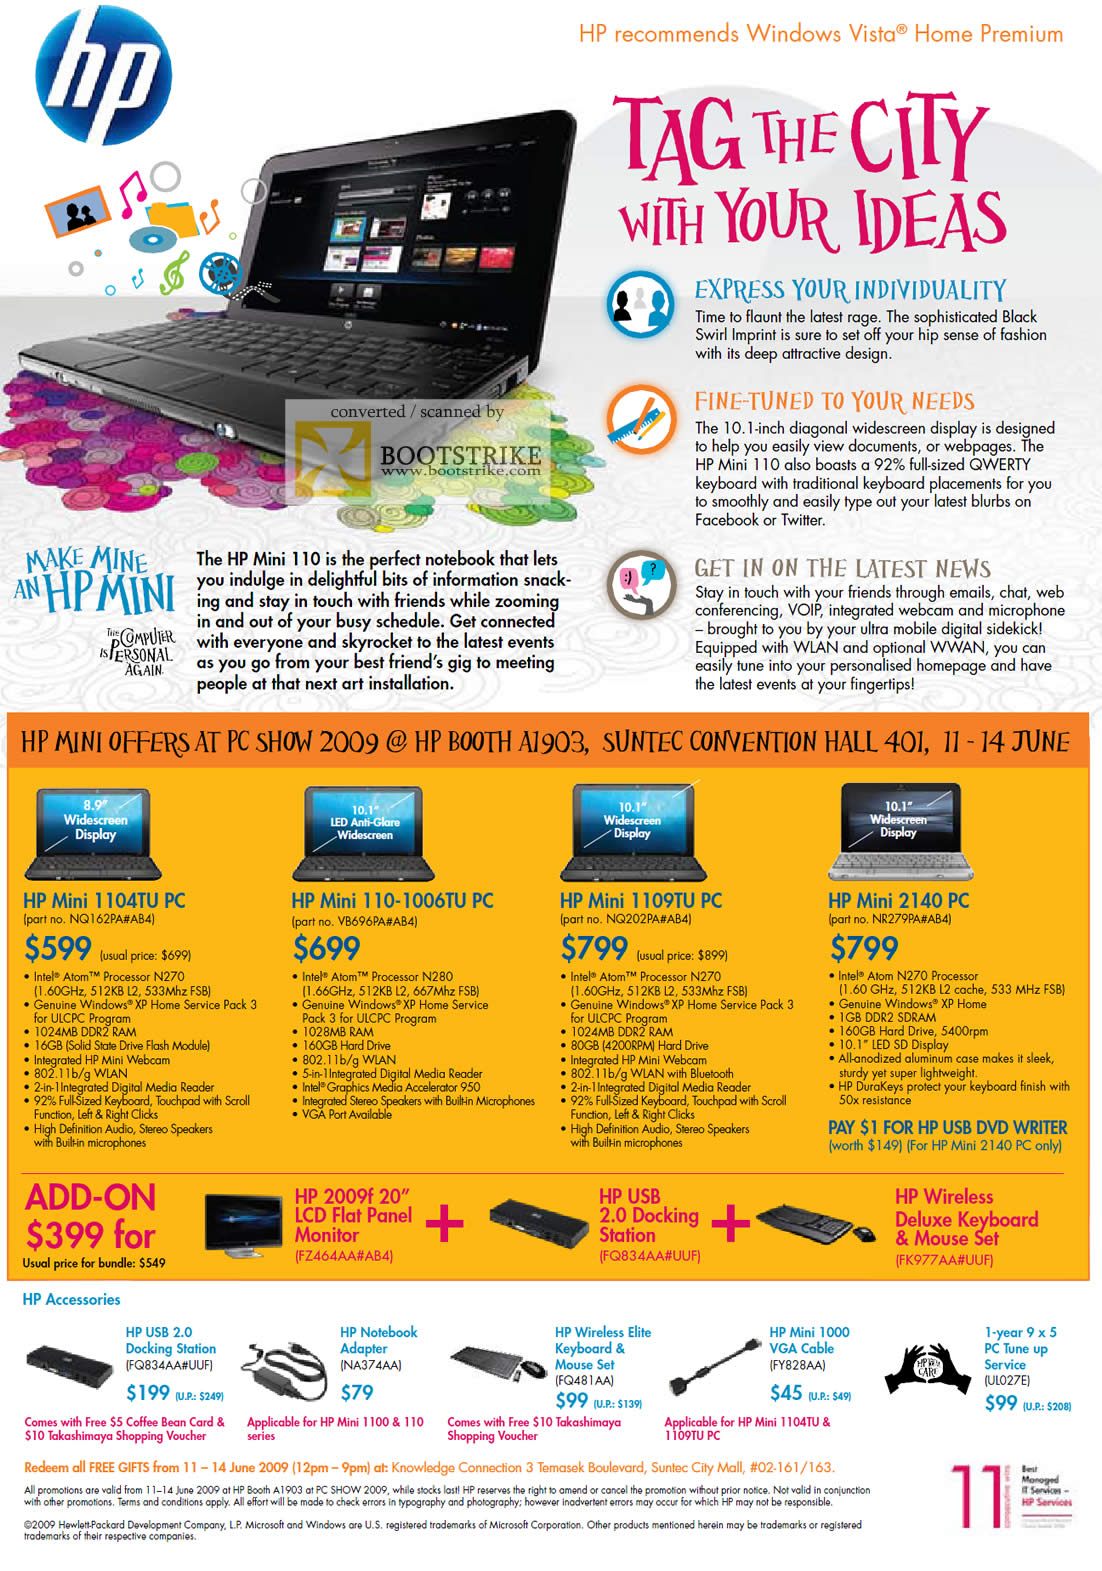 PC Show 2009 price list image brochure of HP Mini Notebook 1104TU 1006TU 1109TU 2140 PC